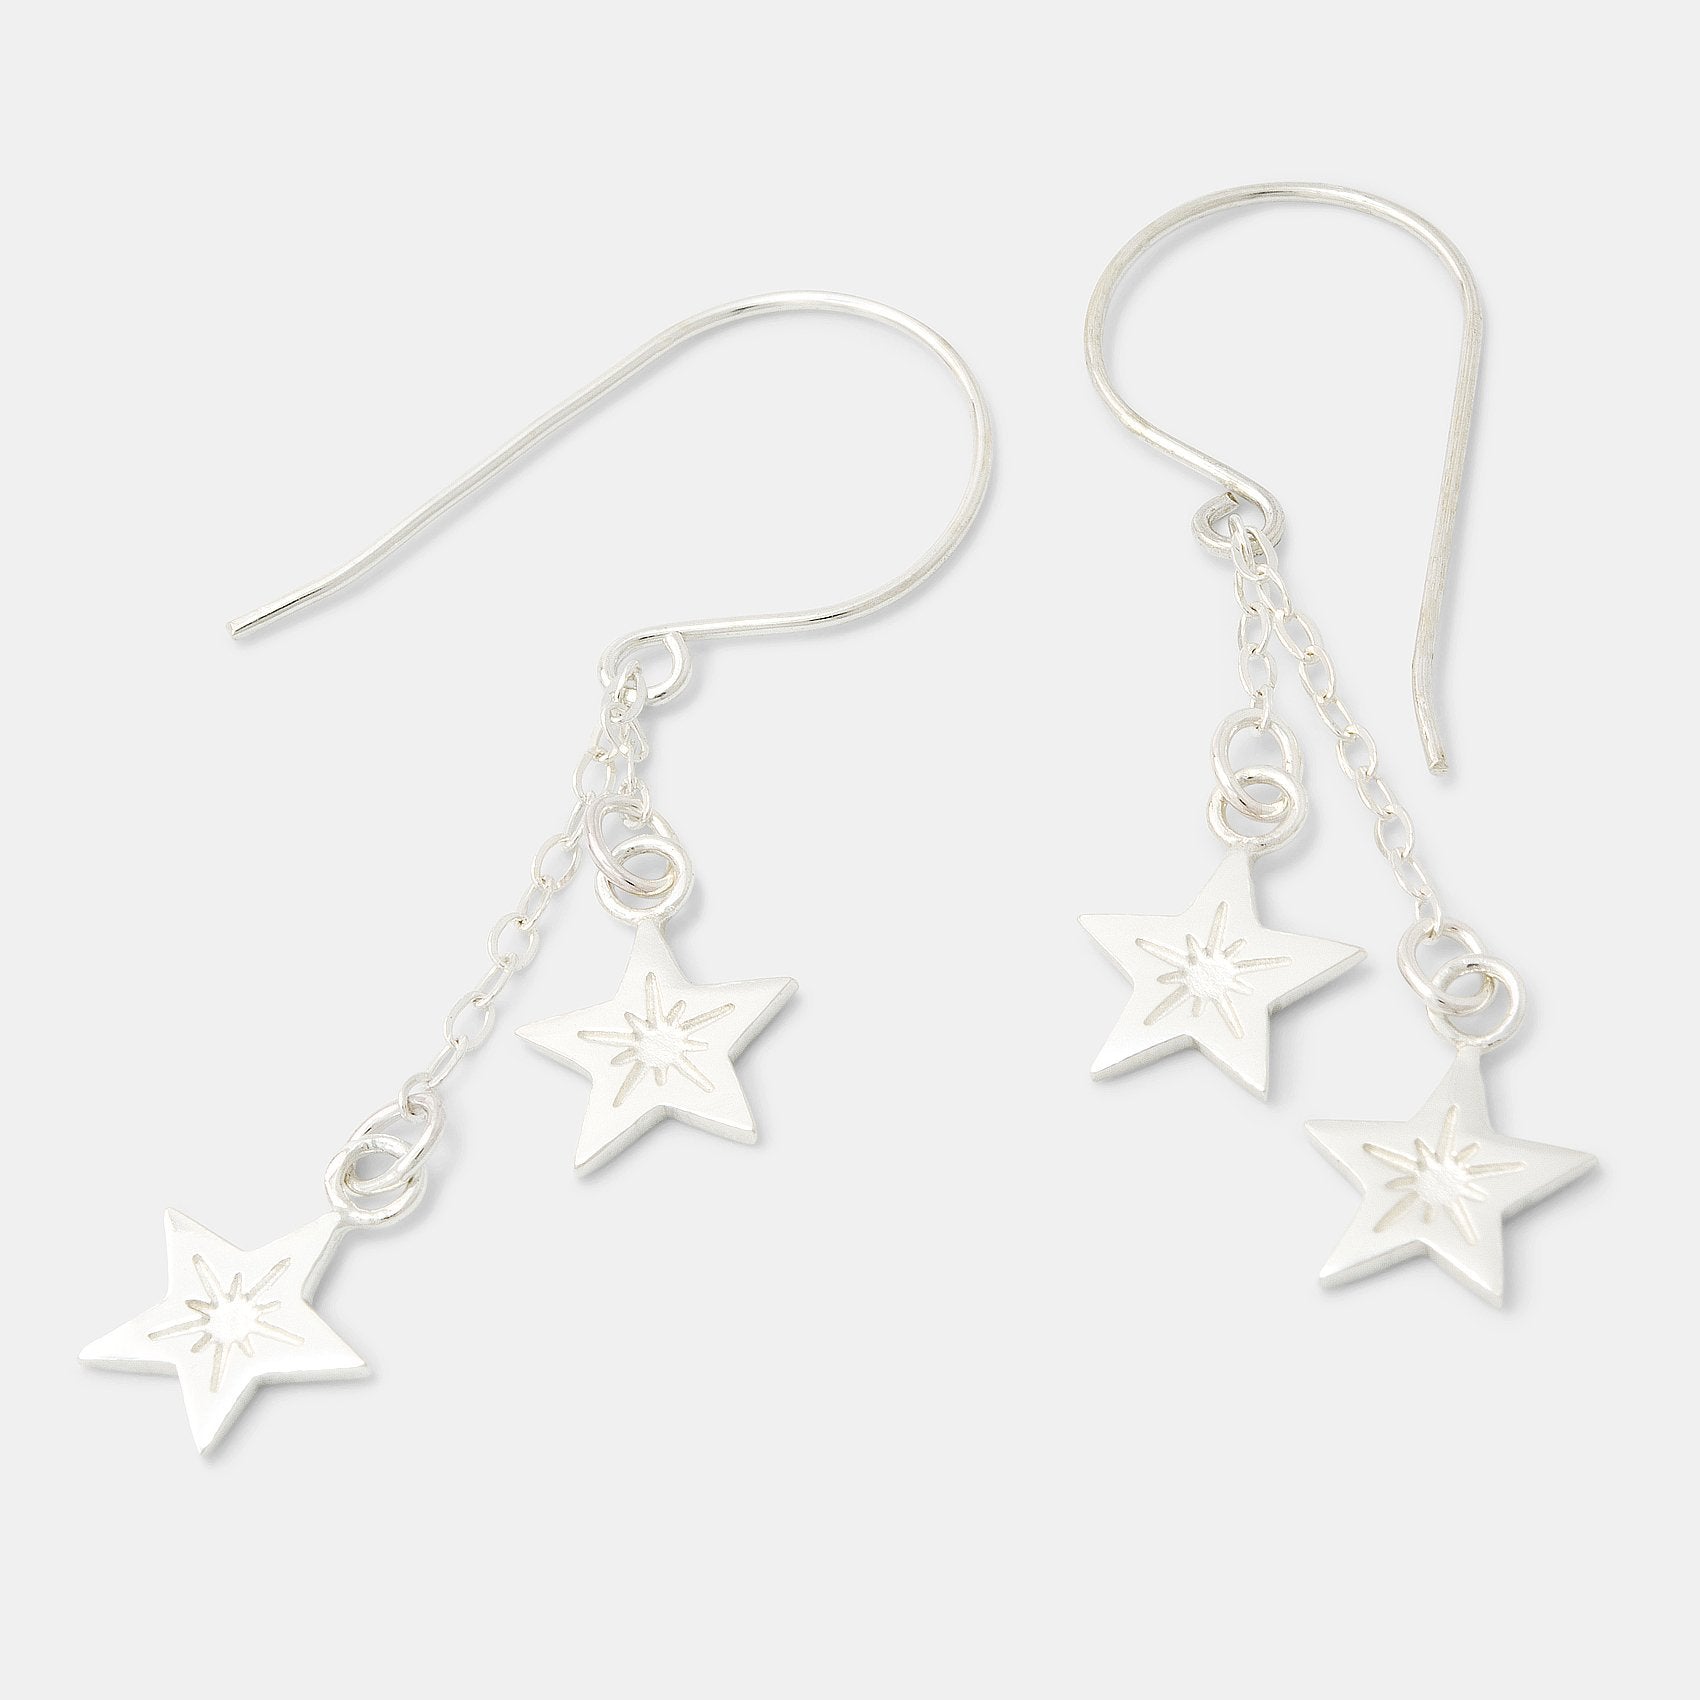 Little stars silver chain dangle earrings - Simone Walsh Jewellery Australia